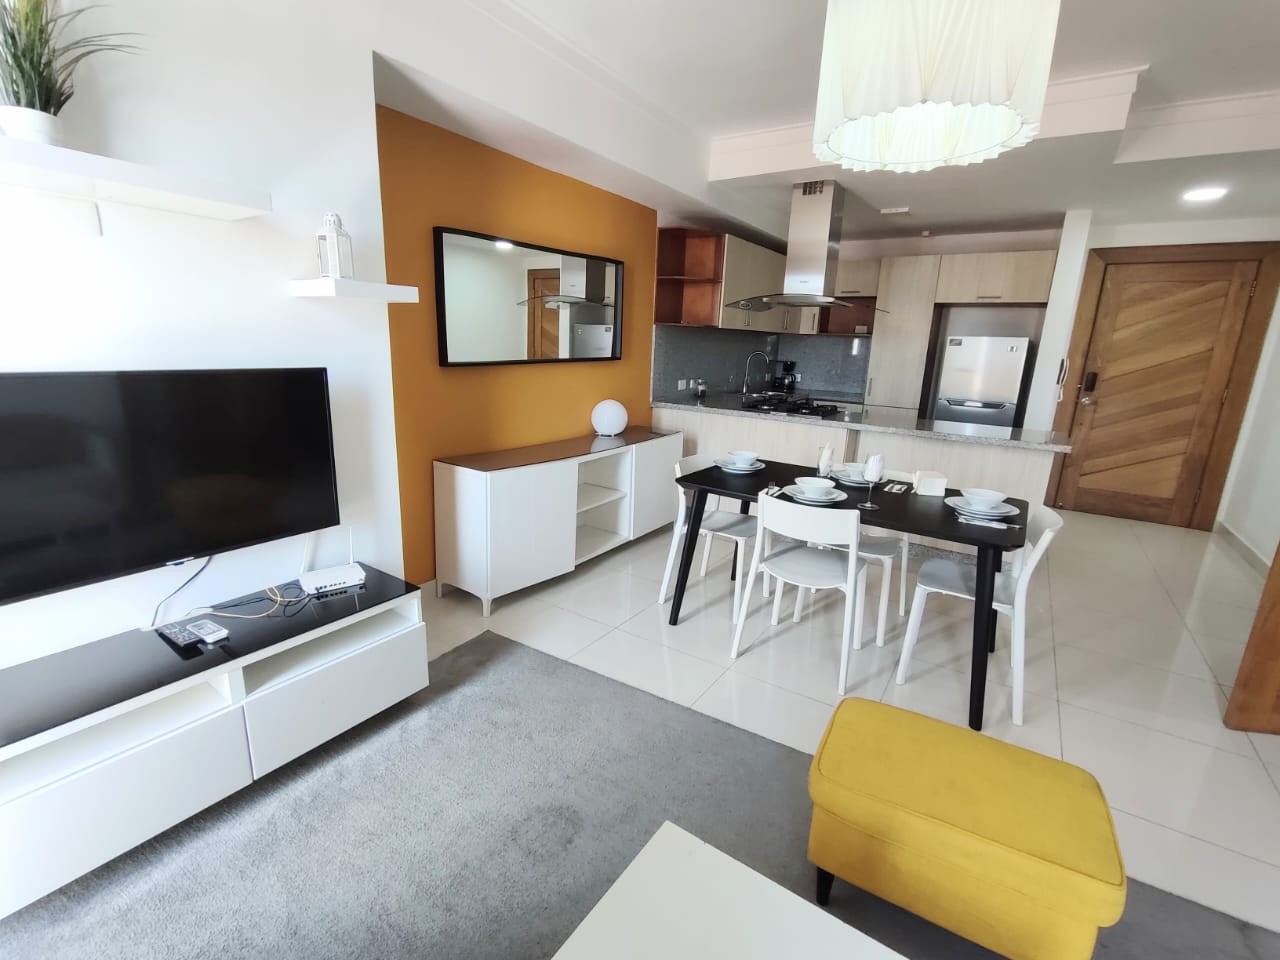 apartamentos - Apartamento en Venta Amueblado 
Mirador Norte
USD175,000
Mantenimiento:RD$6,000 1